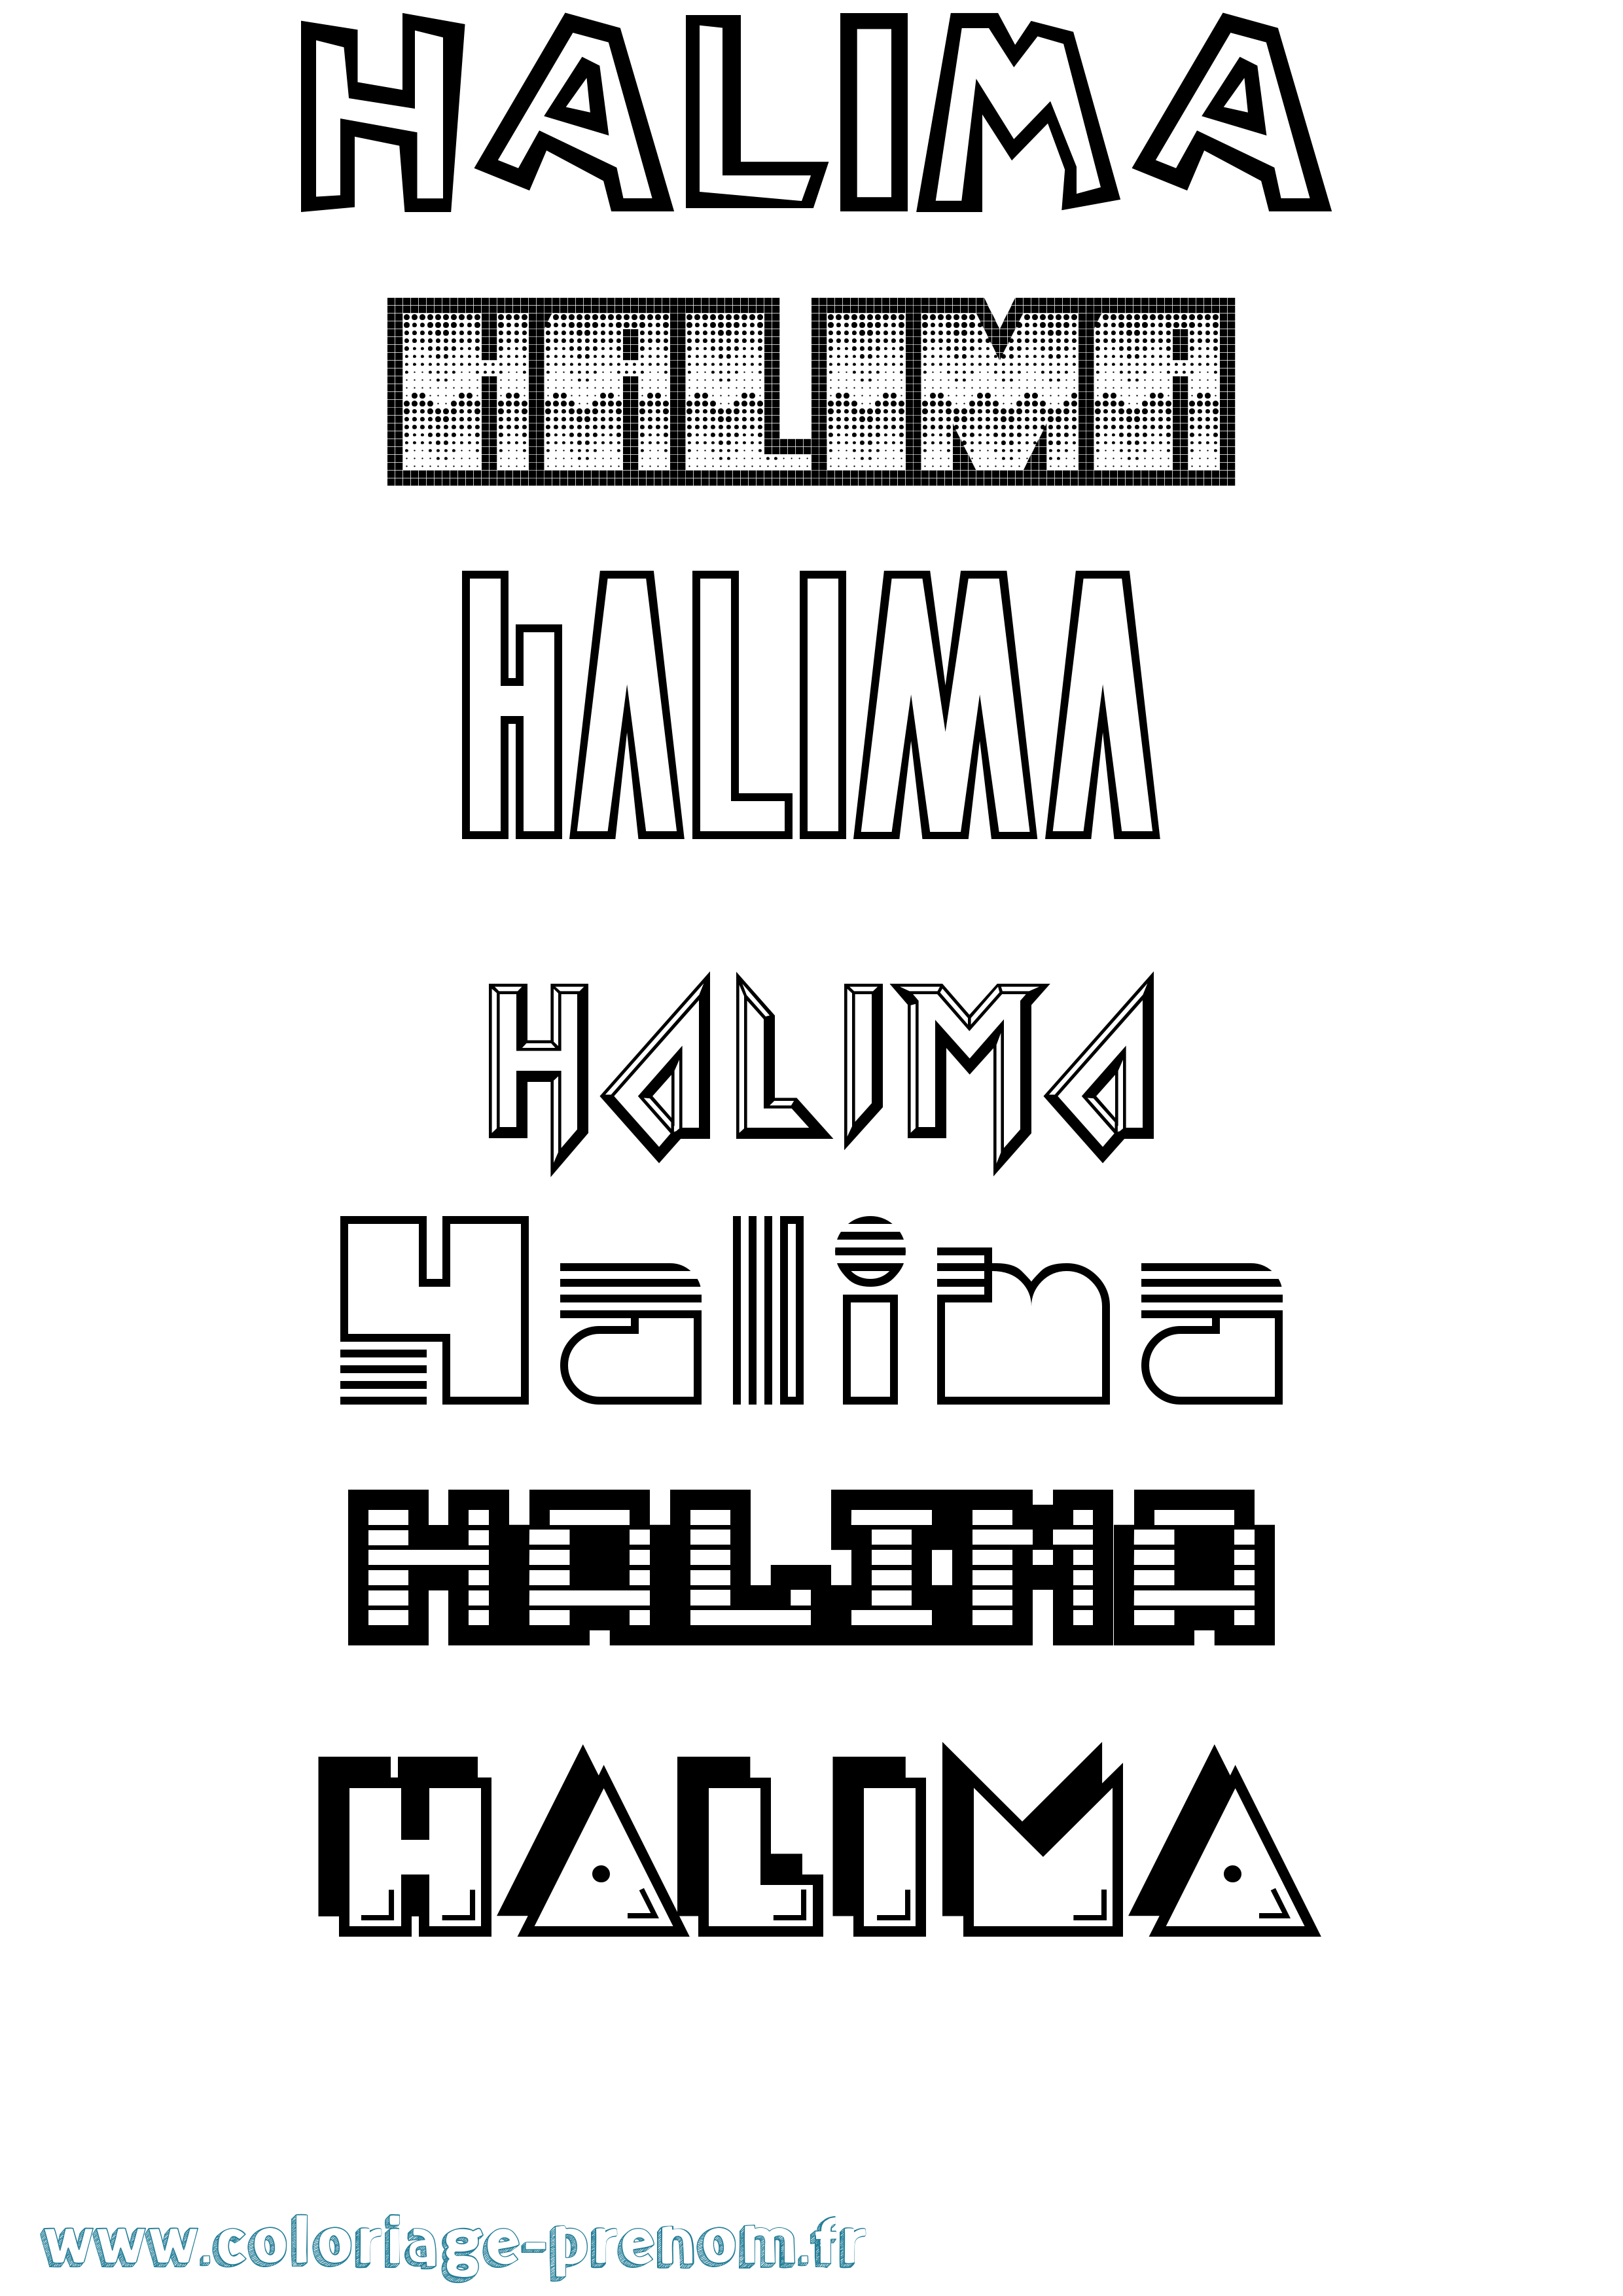 Coloriage prénom Halima Jeux Vidéos